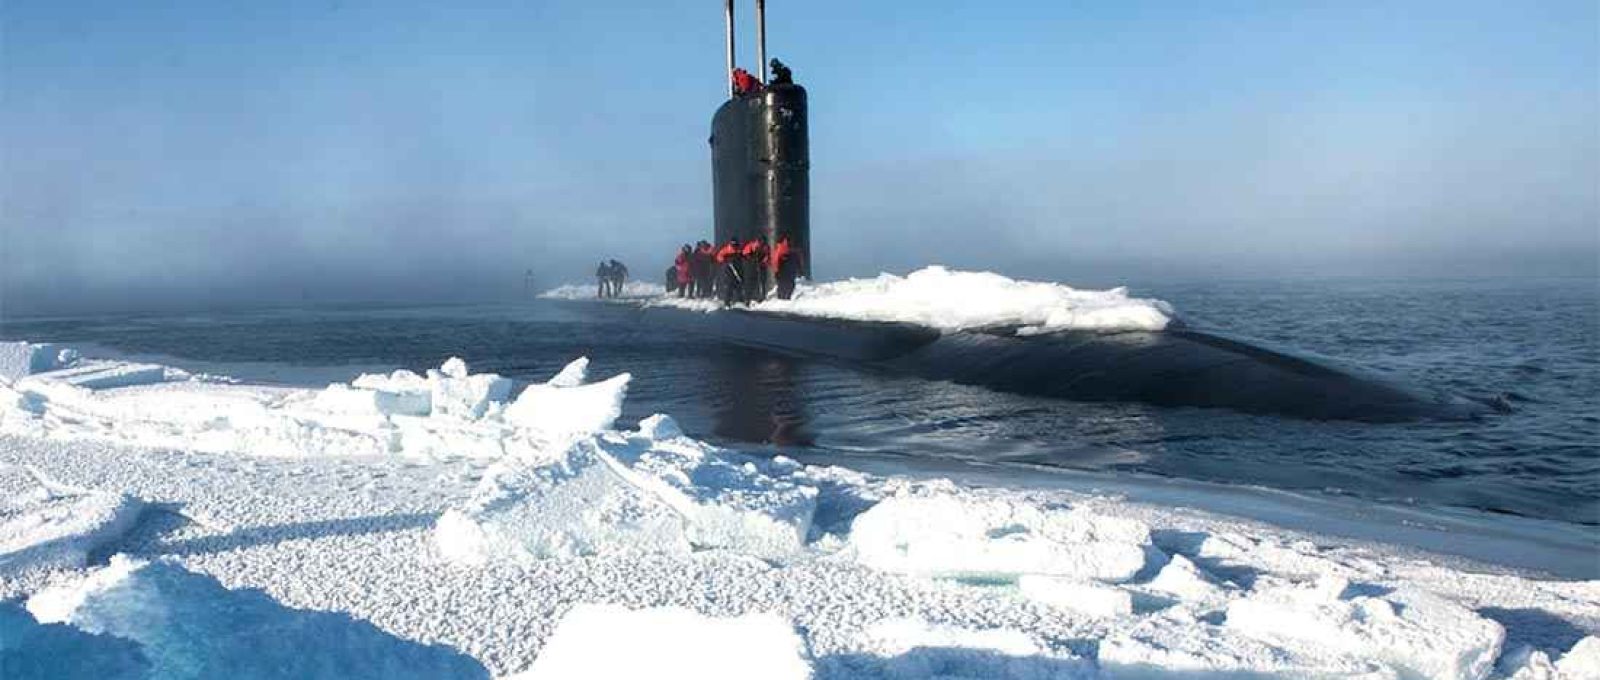 Submarino USS Hartford emerge perto do Acampamento Sargo durante o Exercício do Gelo 2016 no Círculo Polar Ártico em 19 de março de 2016 (Foto: Tyler Thompson/Marinha dos EUA).